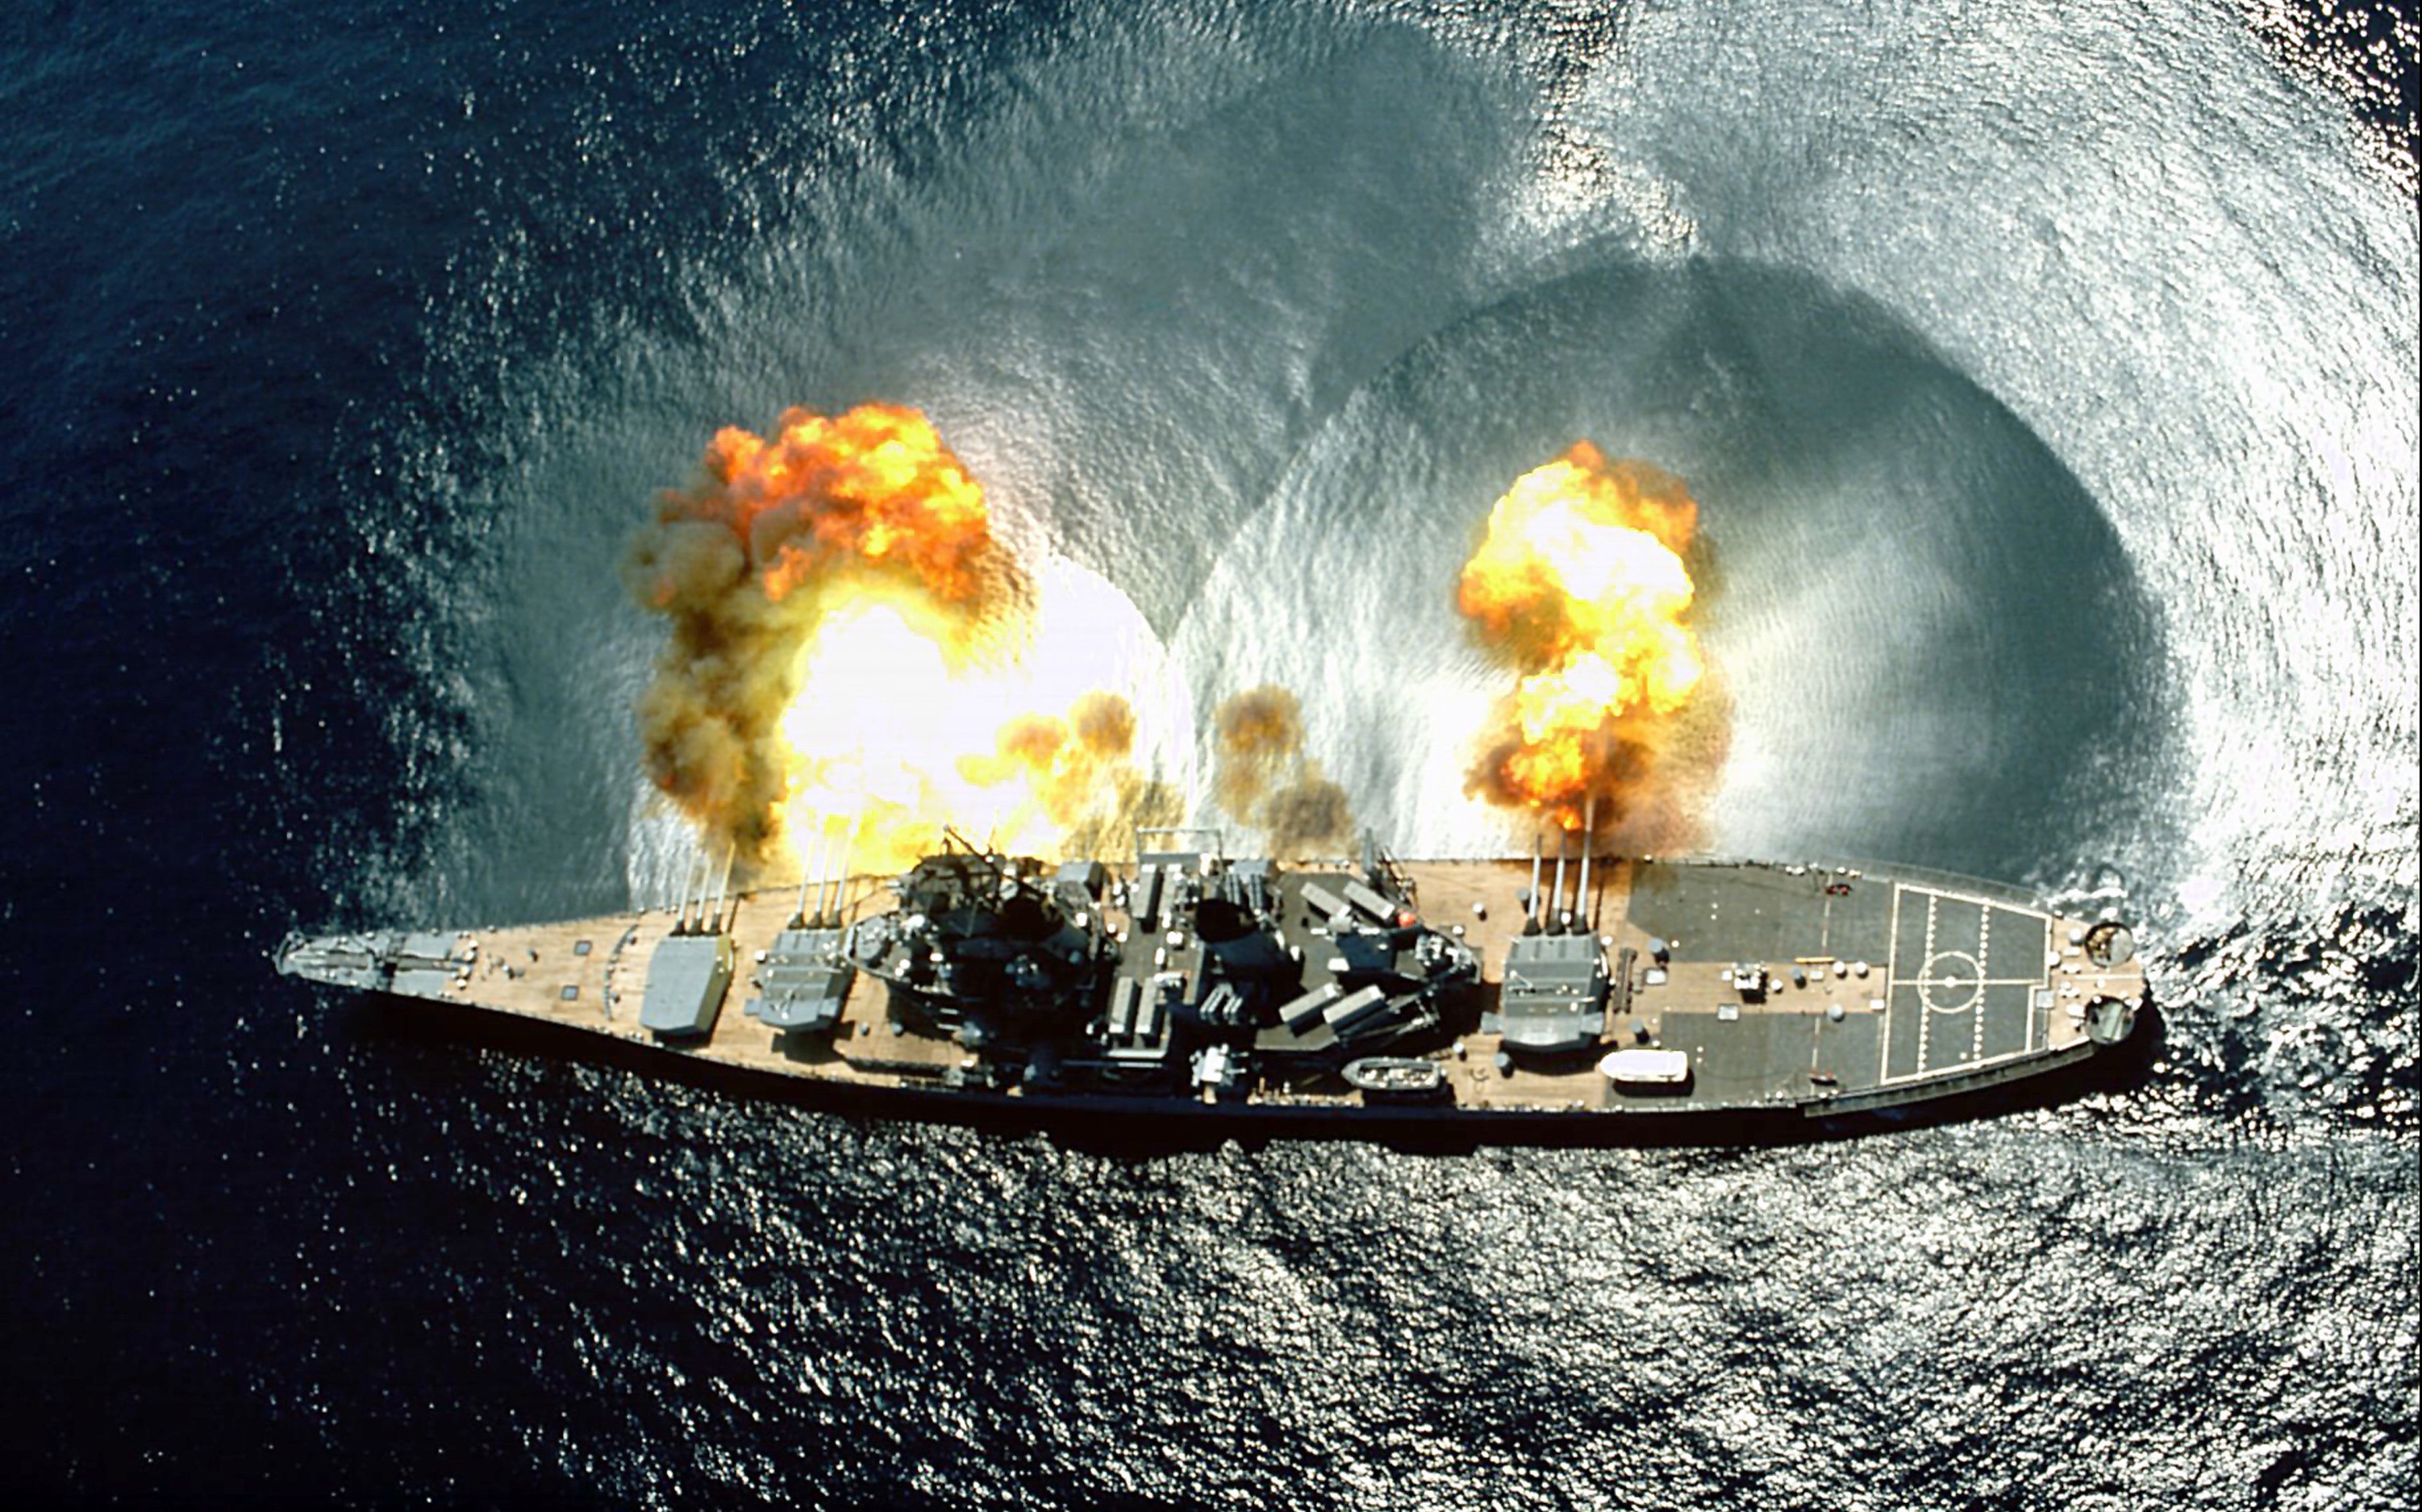 【讲堂219期】狂虐日军的超级战舰,进驻日军东京湾,见证日本的投降